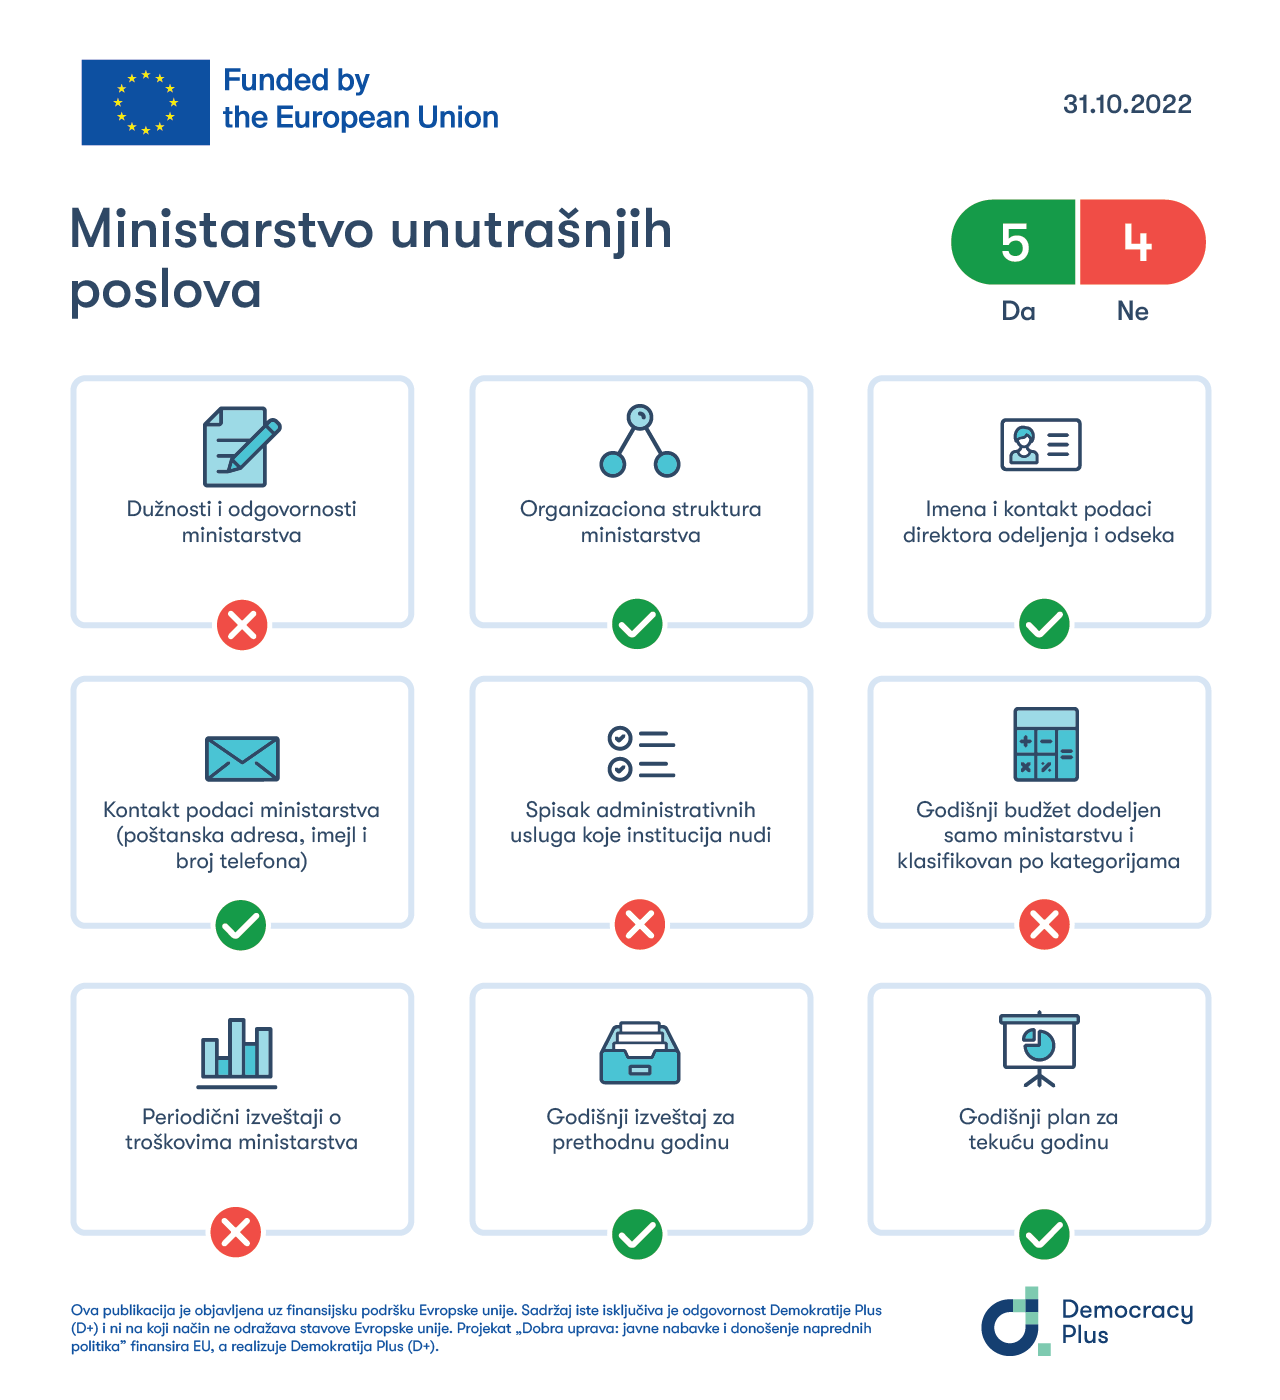 Transparentnost MUP-a ocenjena na osnovu ispunjenosti kriterijuma propisanih Administrativnim uputstvom o internet stranicama javnih institucija